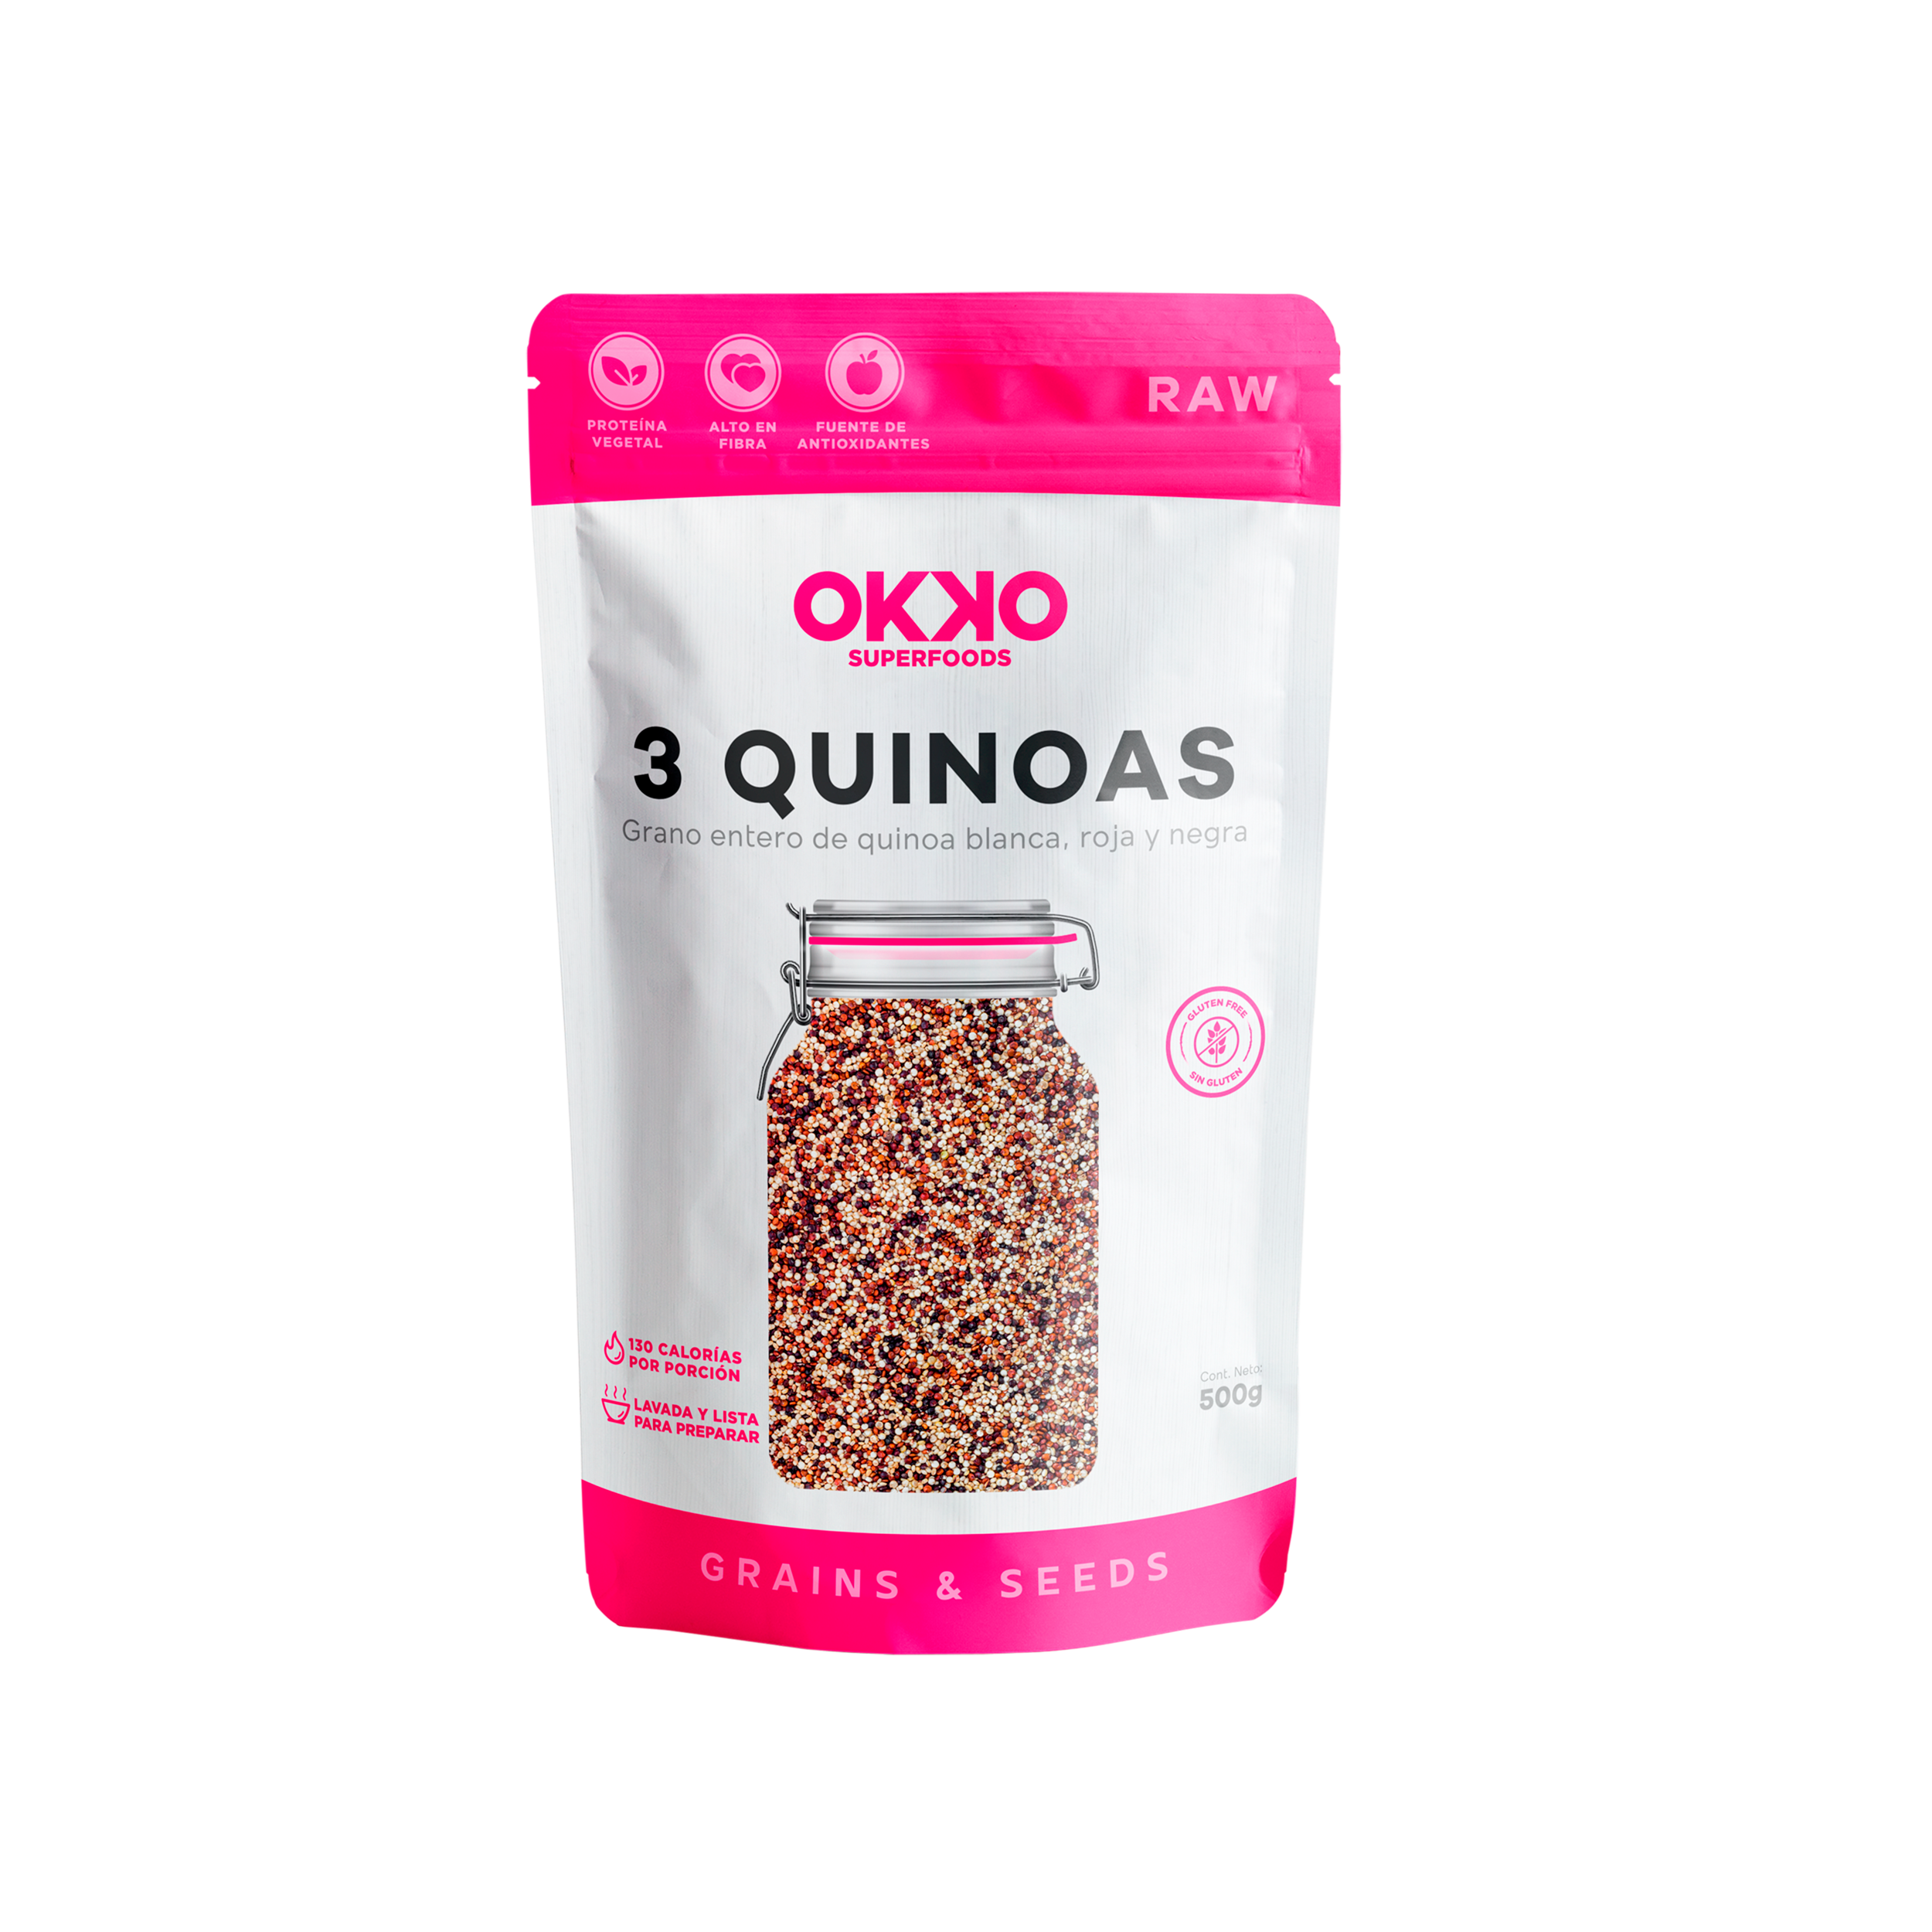 OKKO - 3 Quinoas (negra, ámbar, roja) 500 G